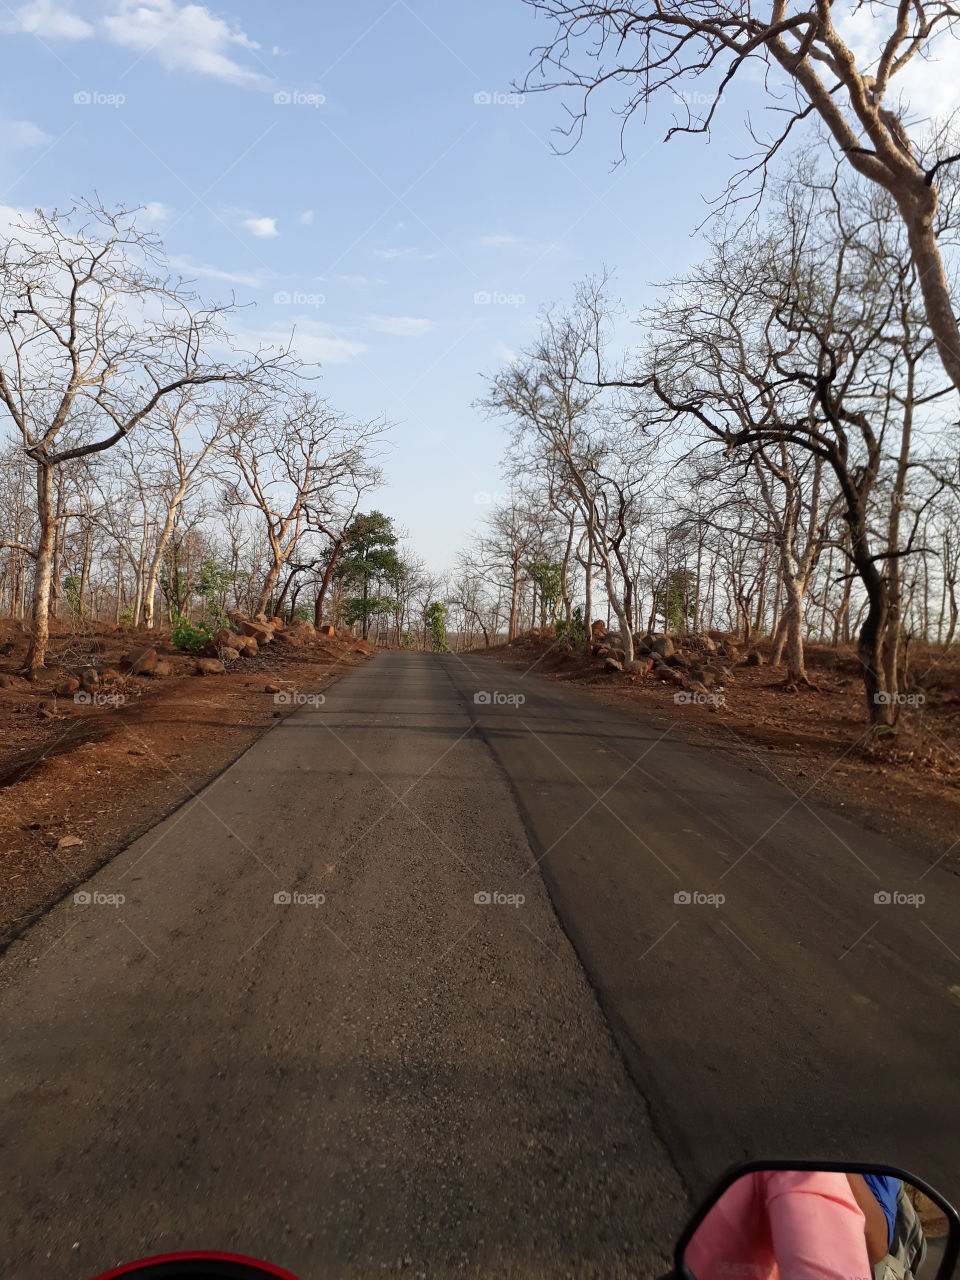 Road, Tree, No Person, Landscape, Nature